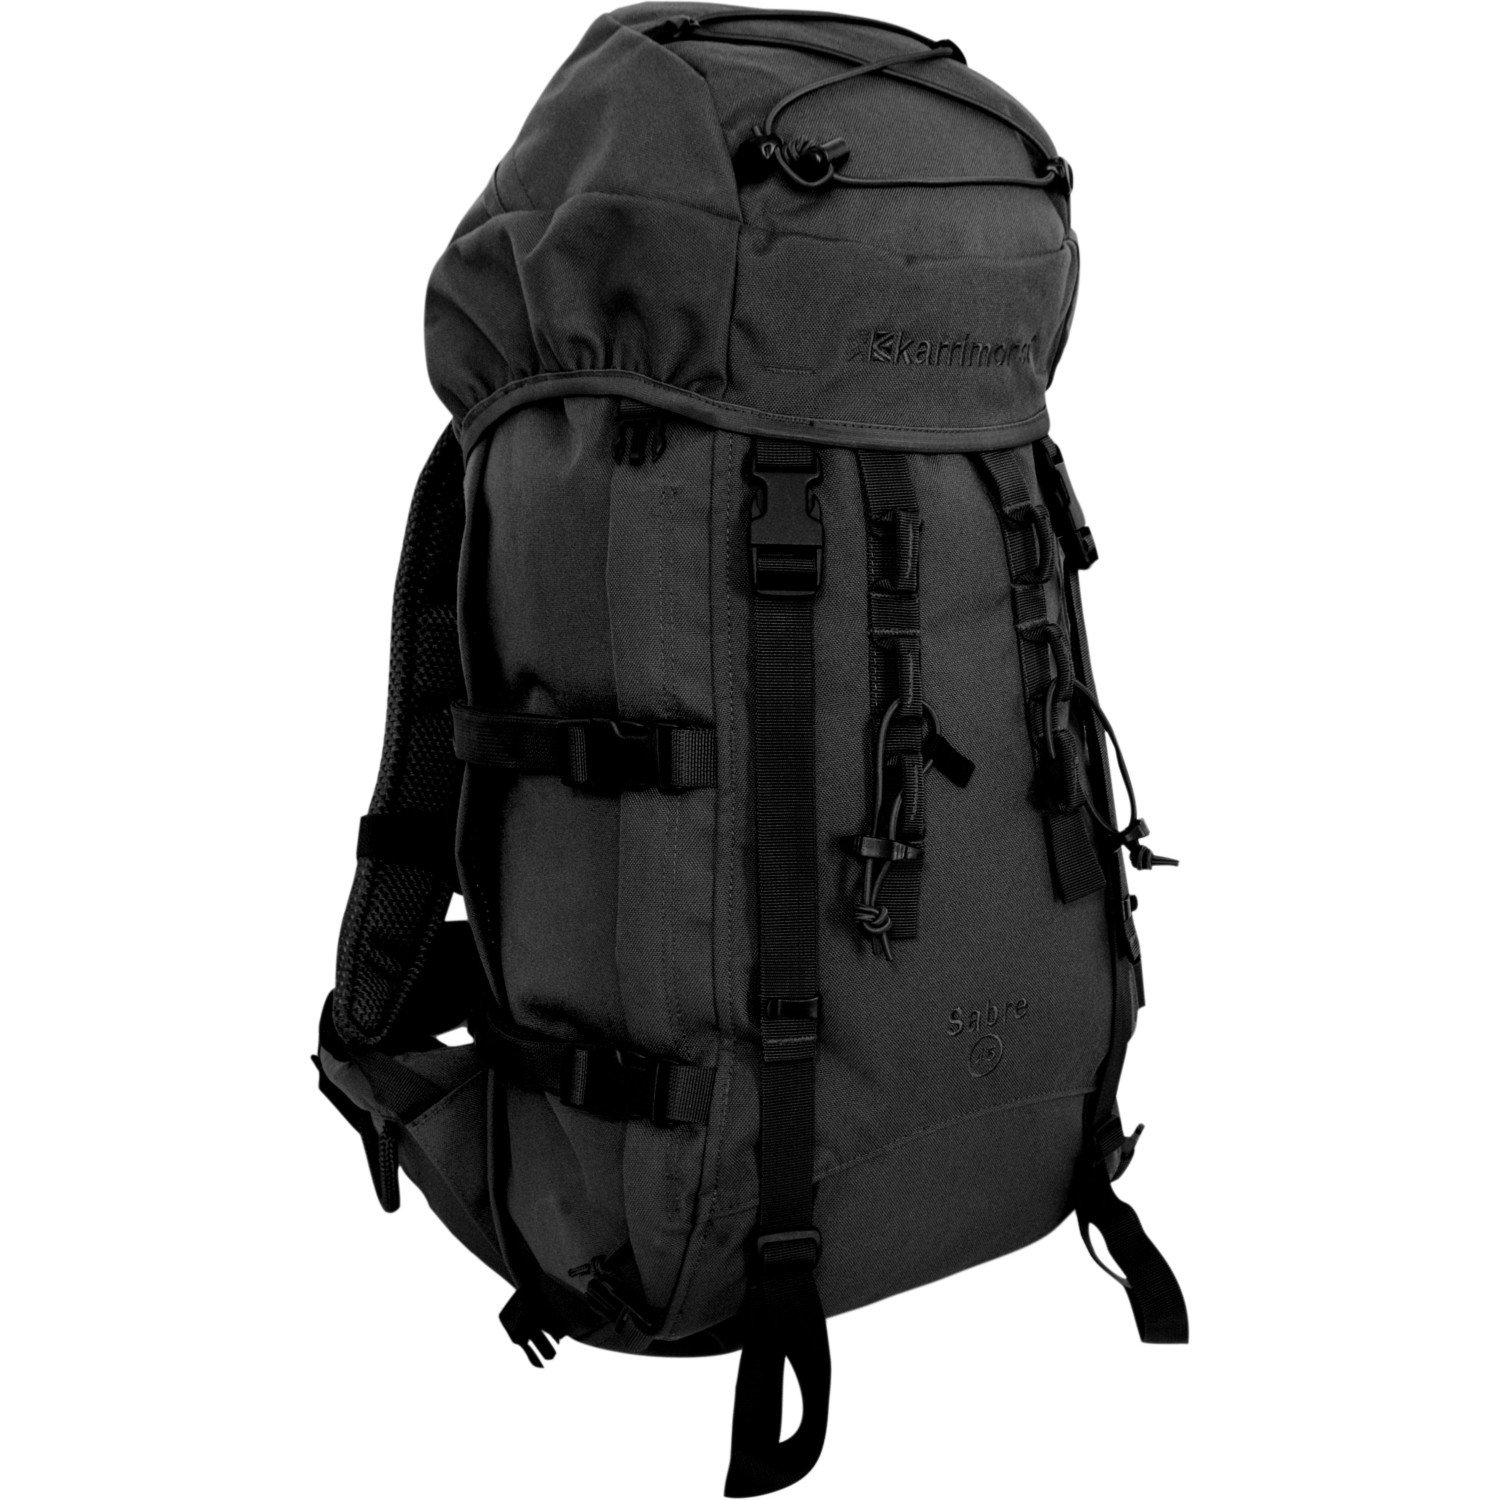 Karrimor SF Sabre 45 Backpack